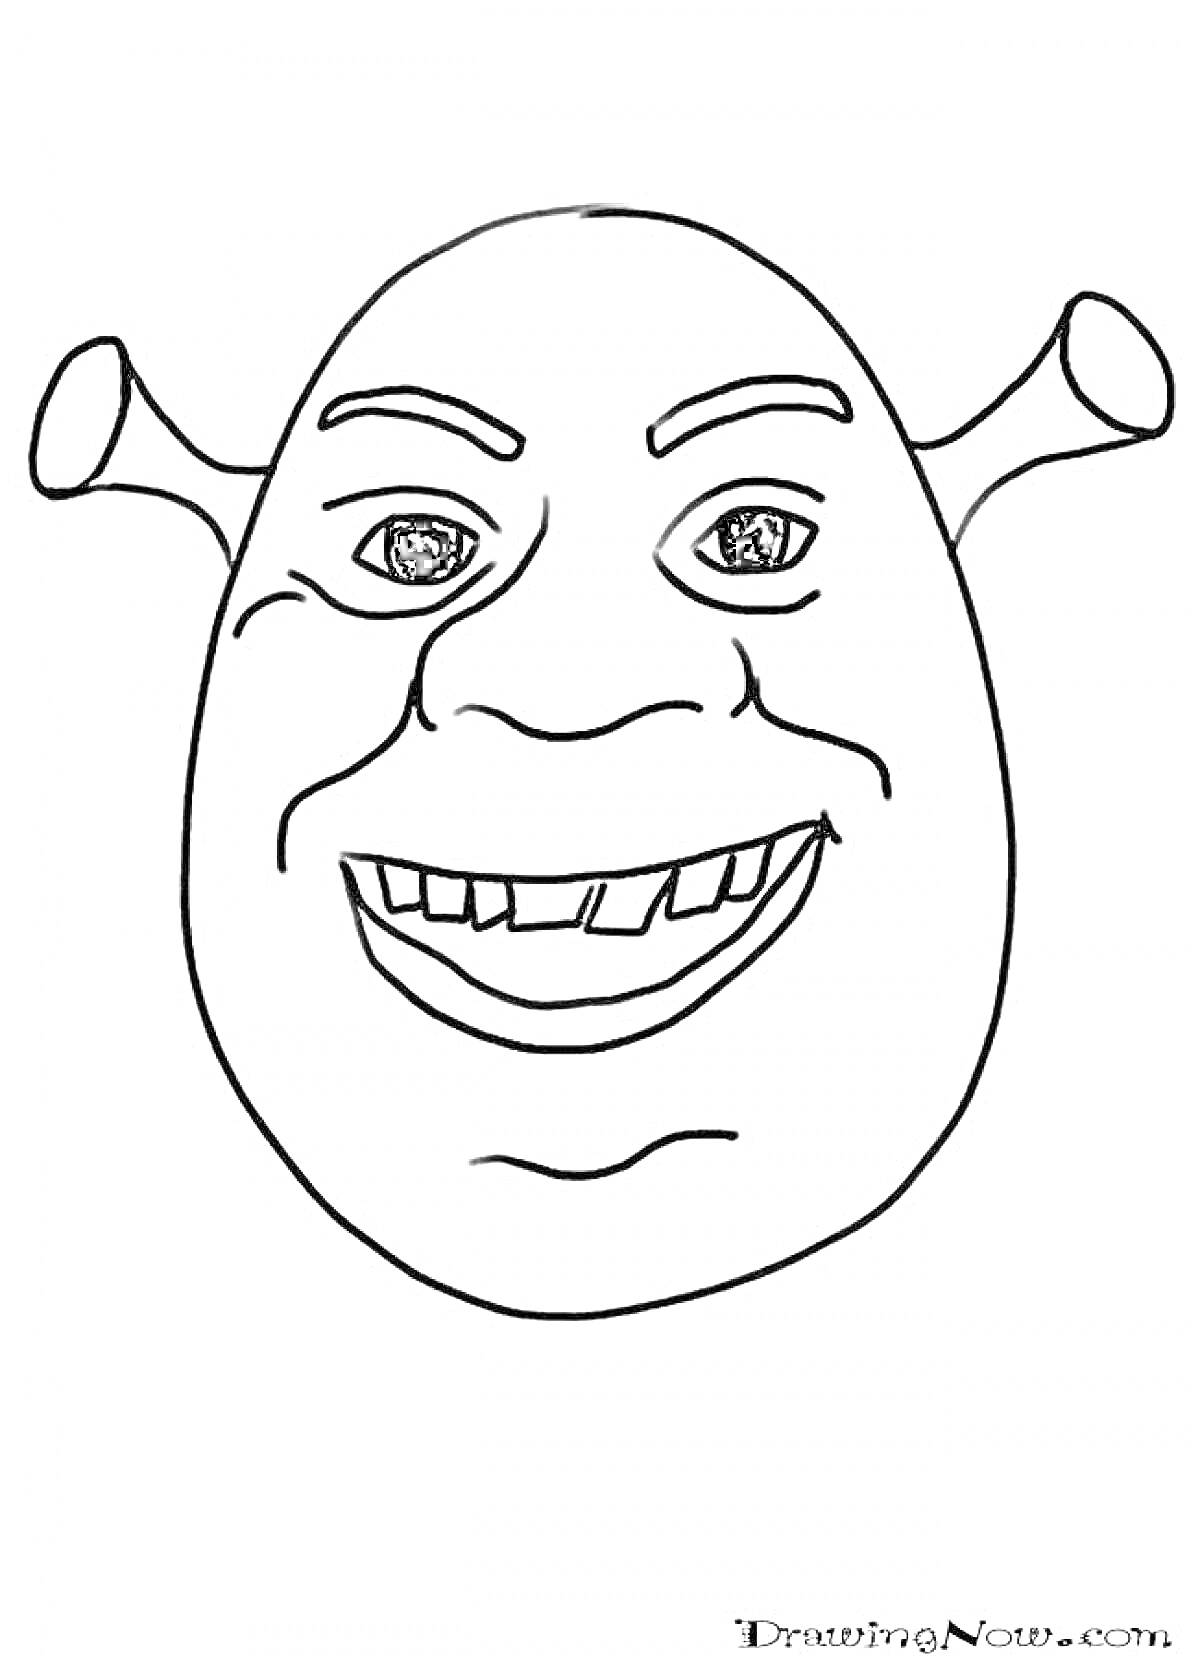 Раскраска Лицо персонажа с трубчатыми ушами из известного мема